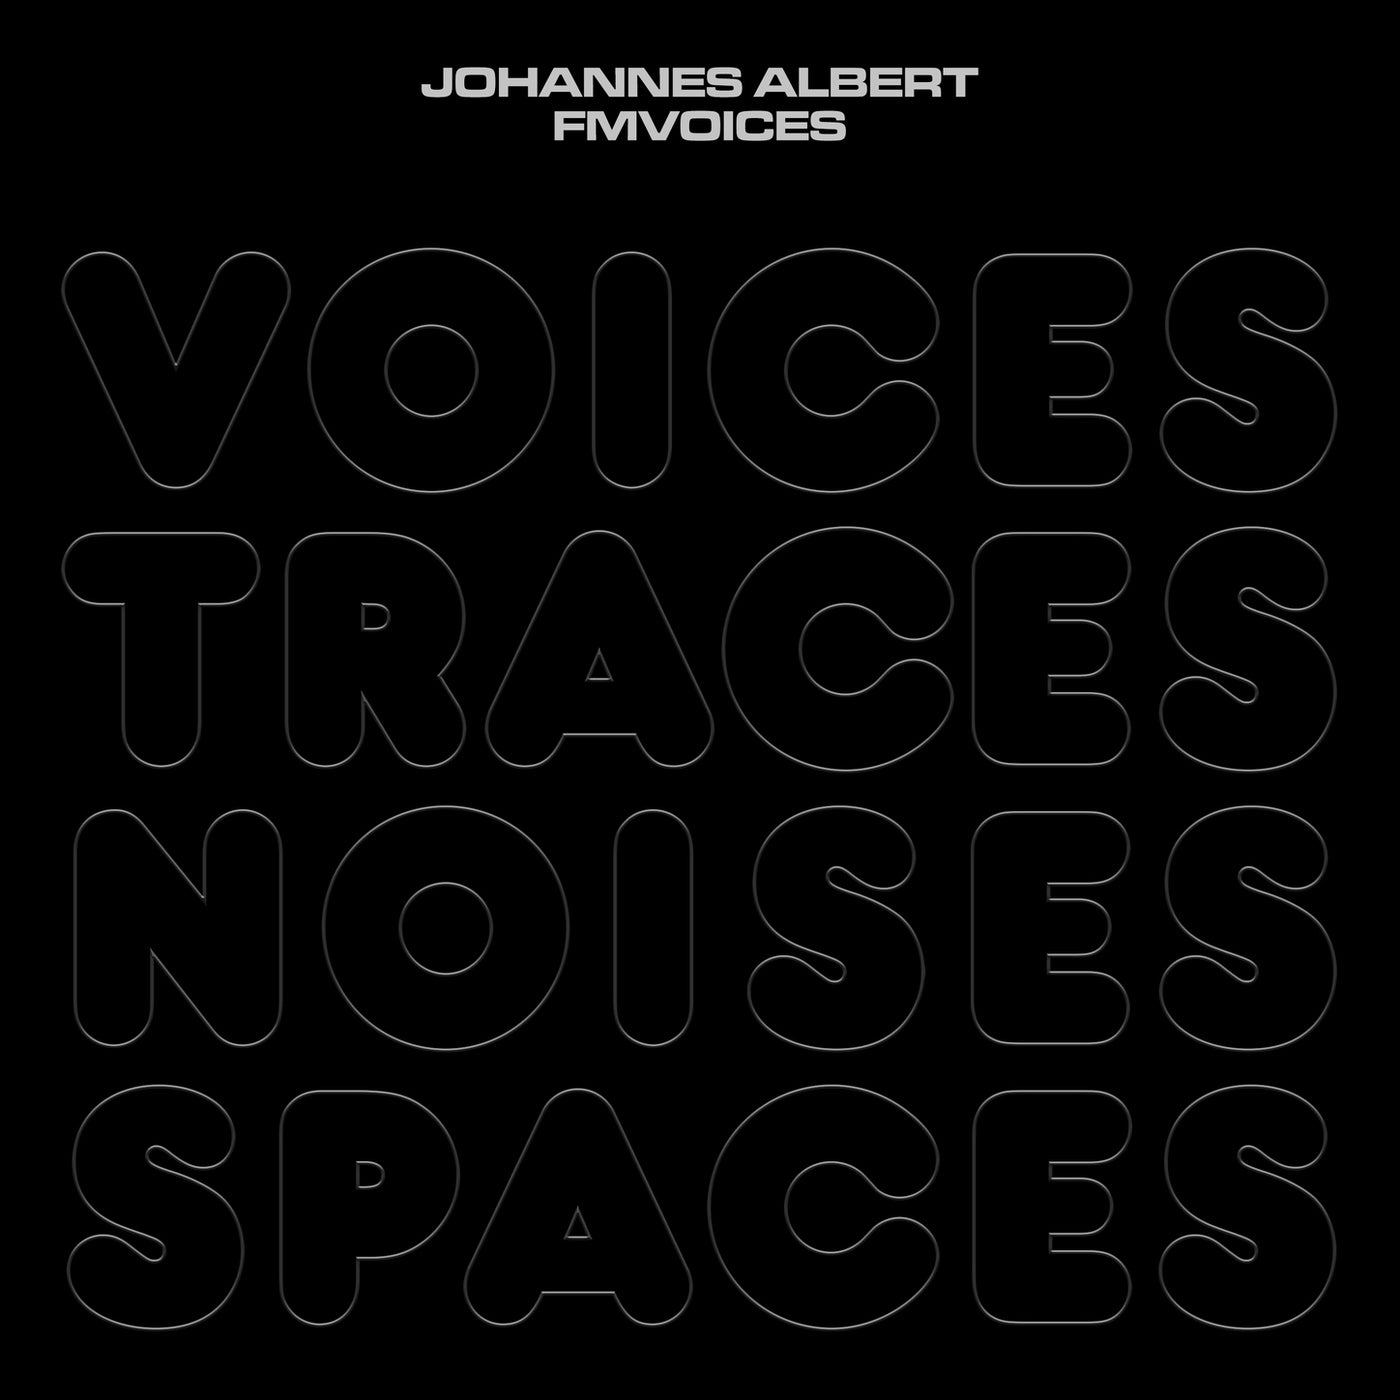 Voices Traces Noises Spaces